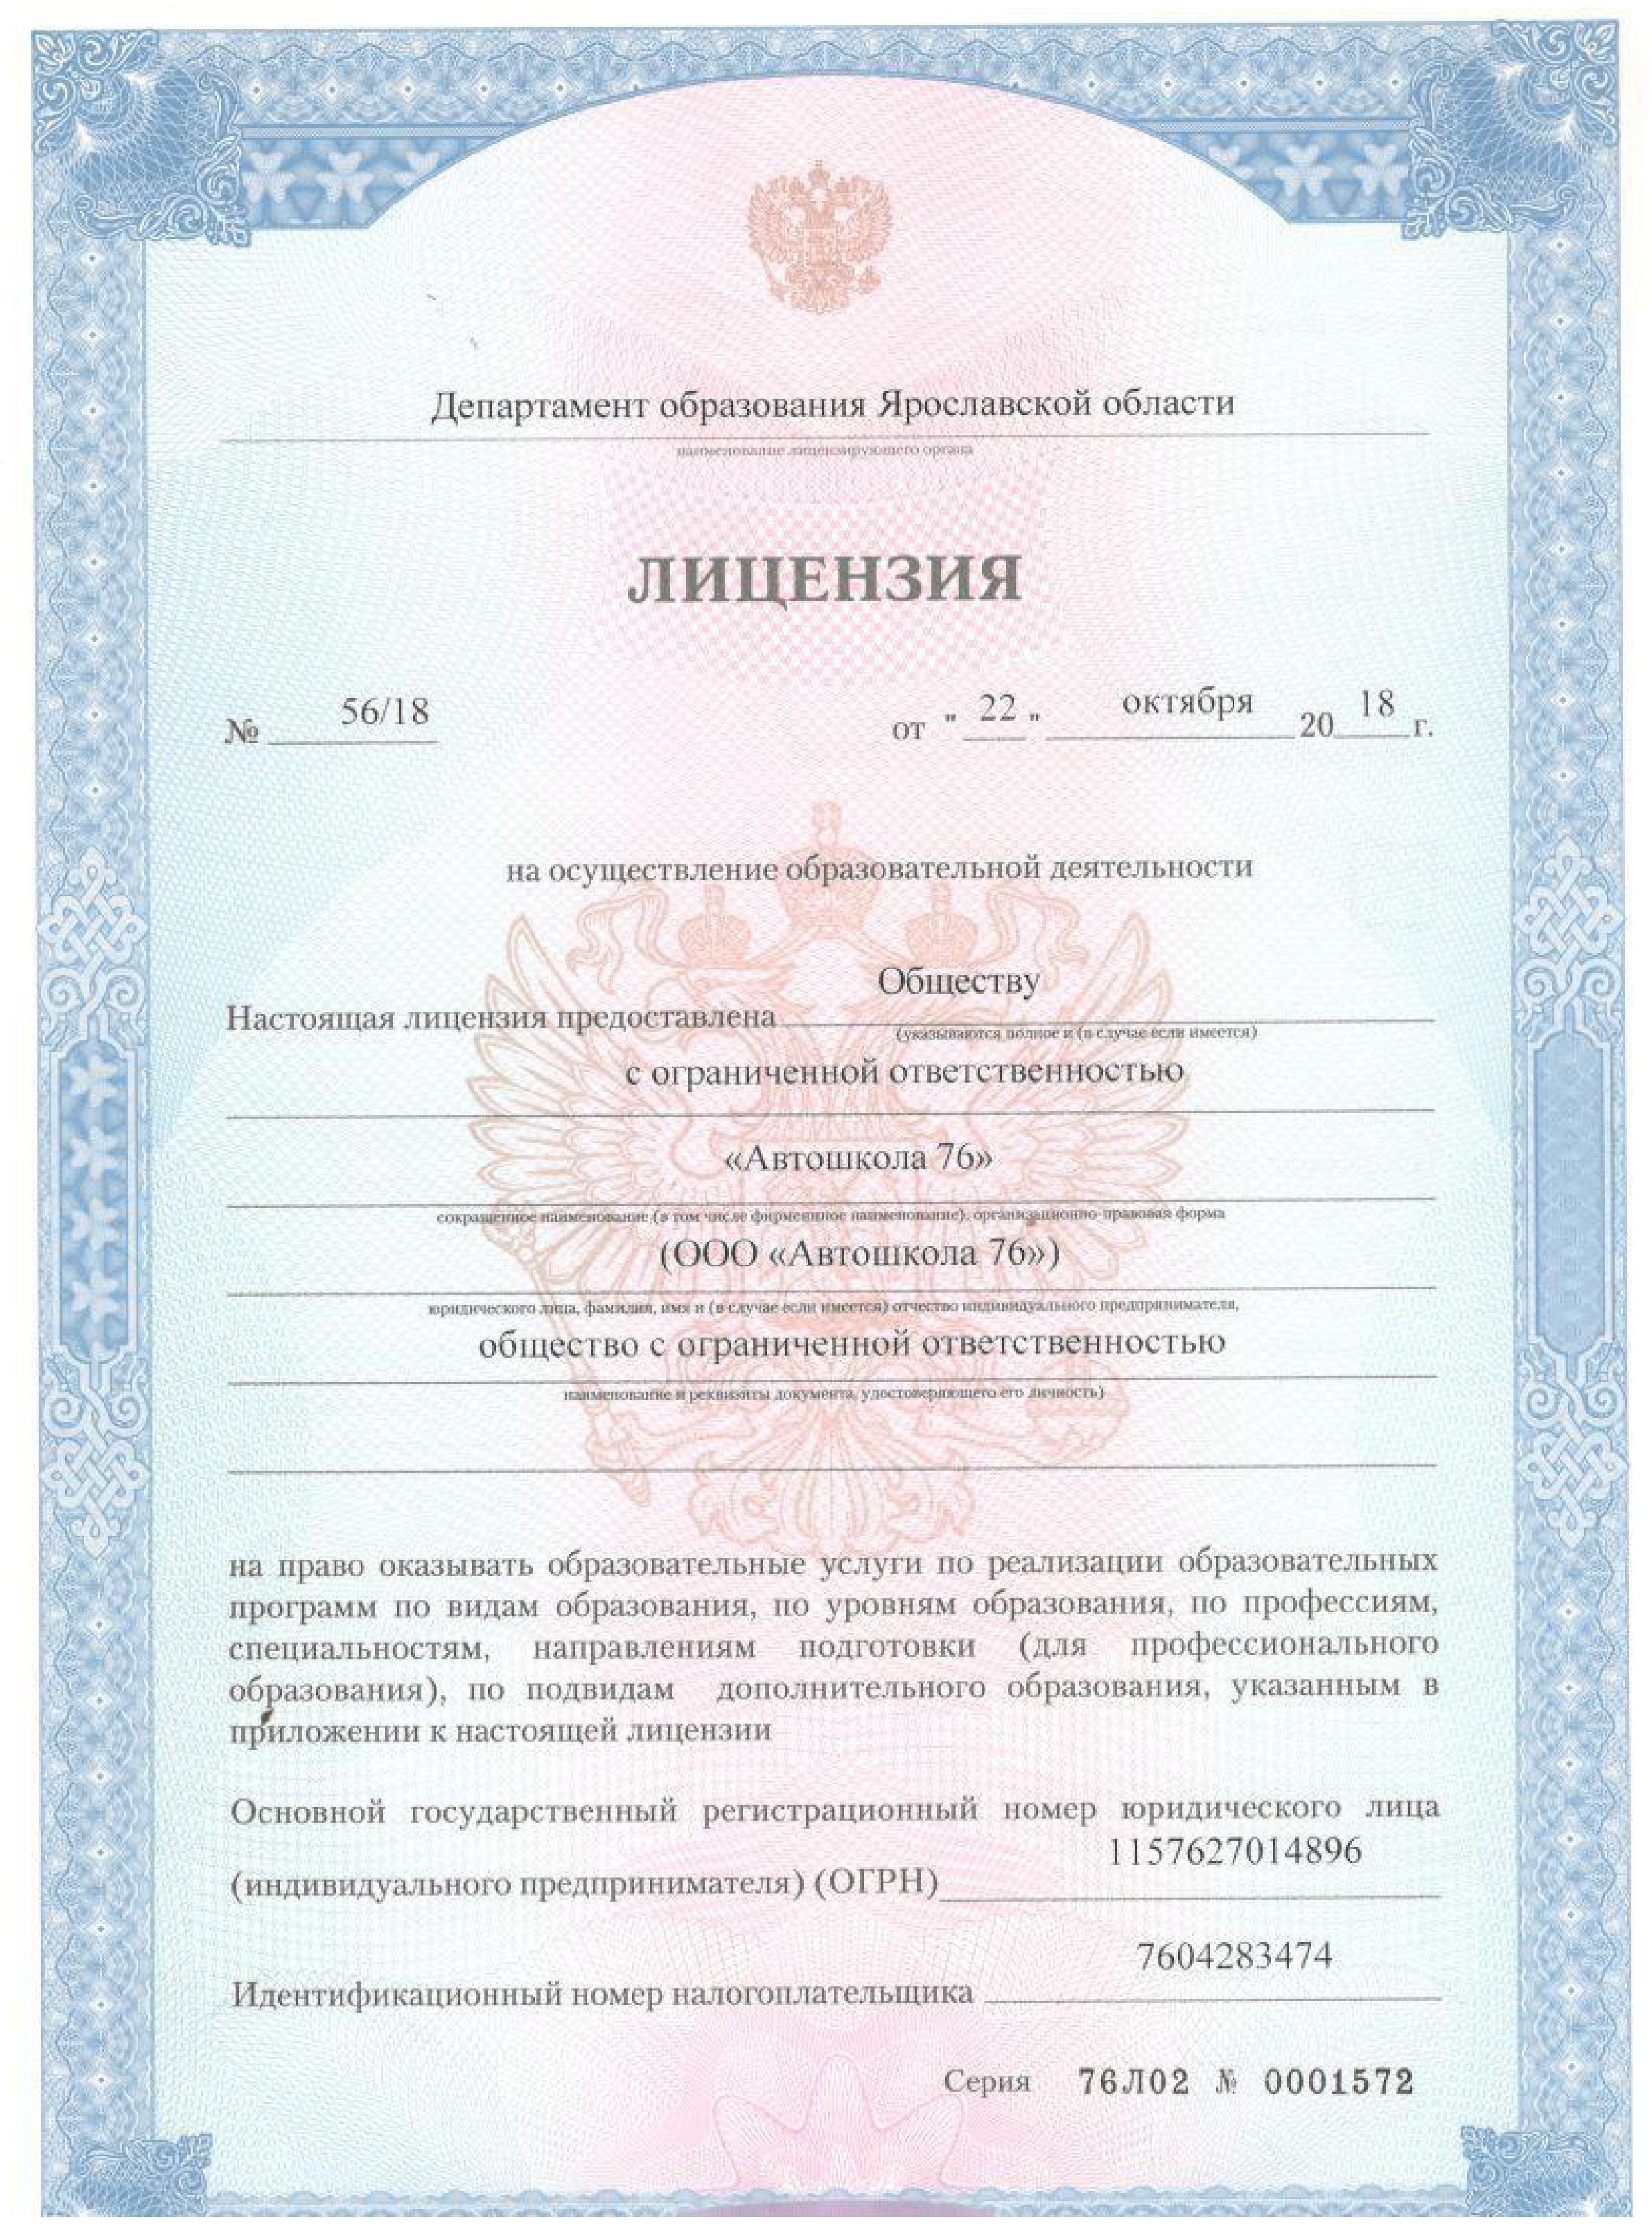 Фото лицензии департамента образования Ярославской области